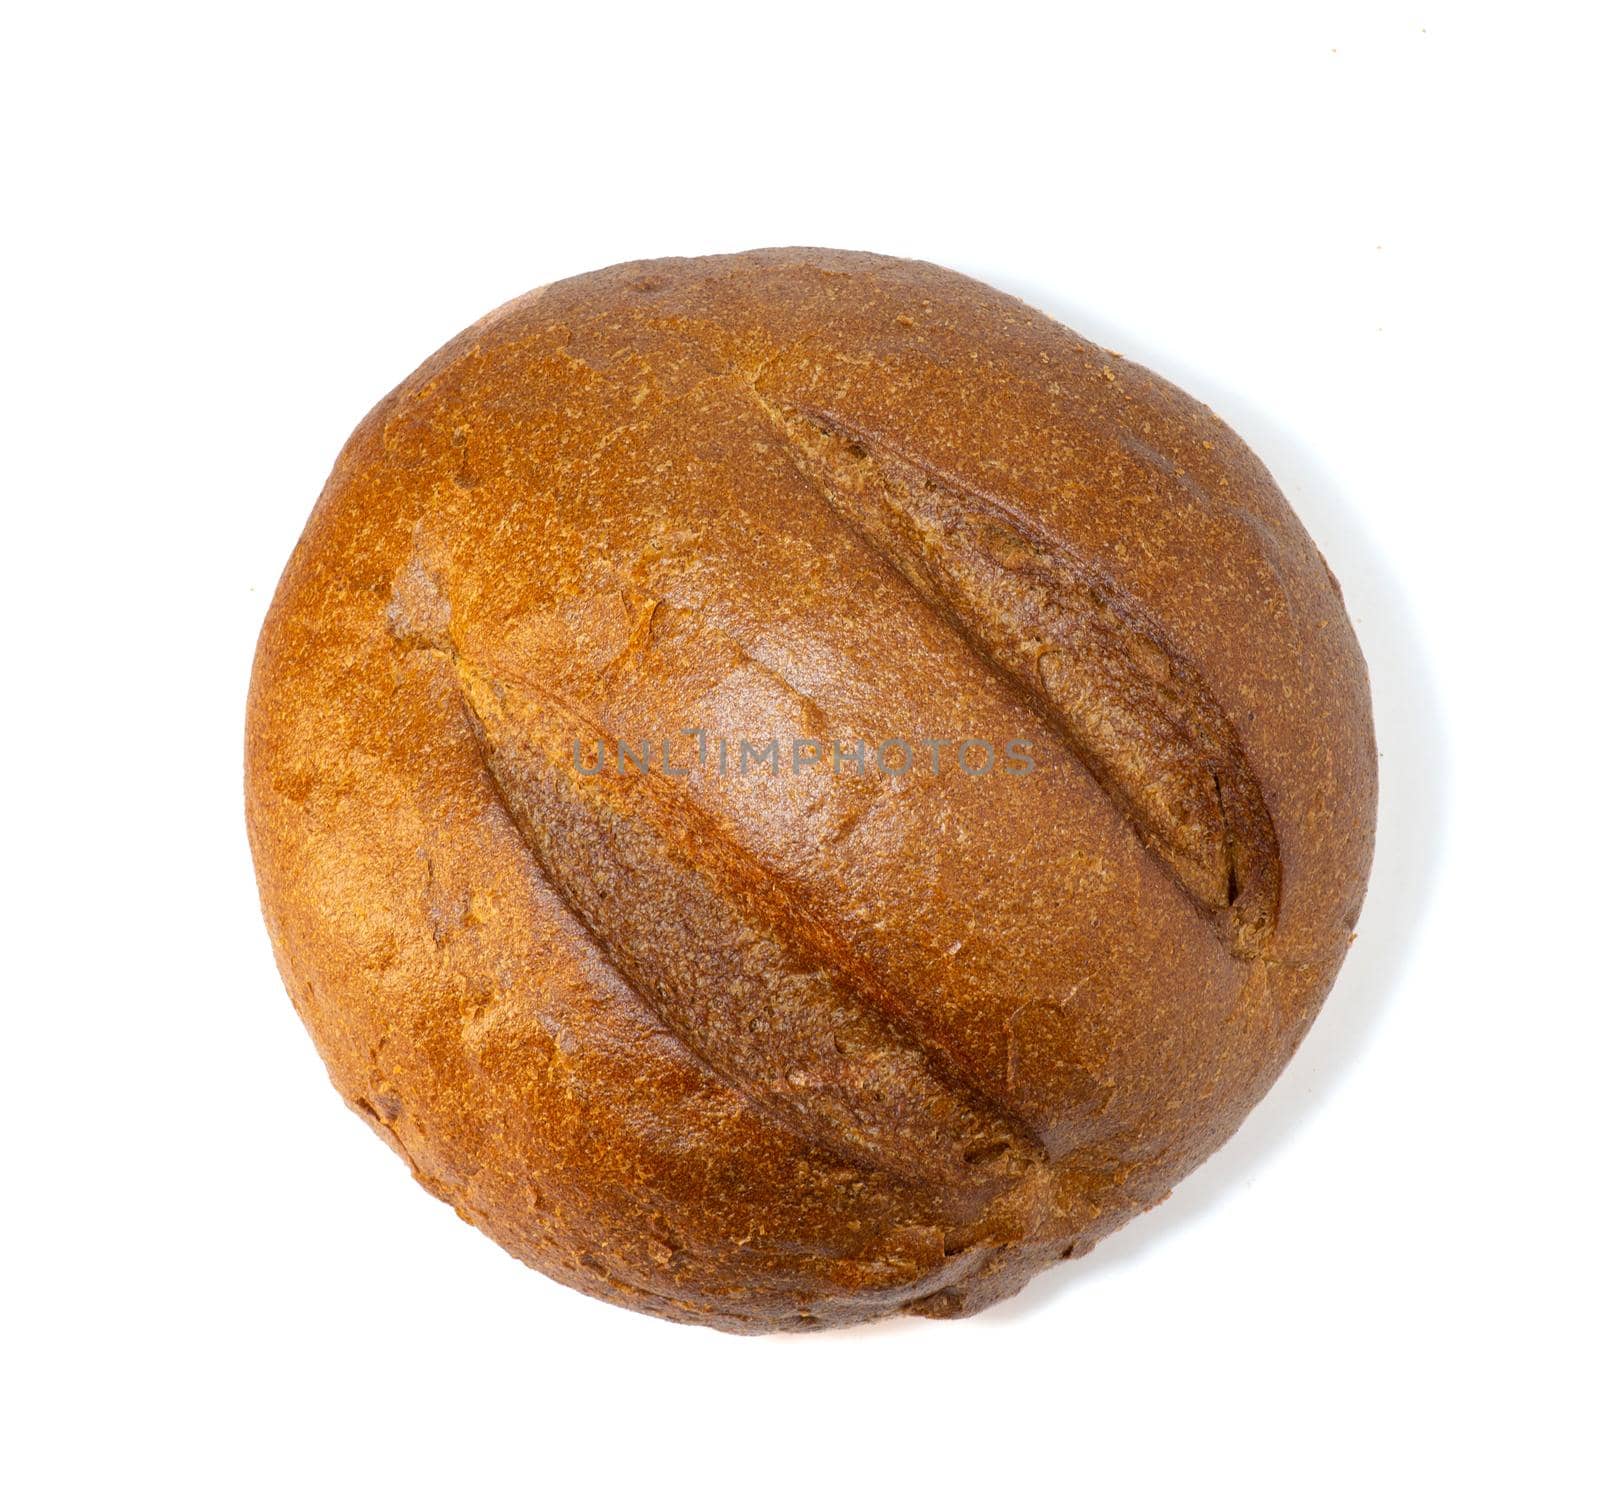 Round black bread on white background. Fresh bread, healthy food on white background
